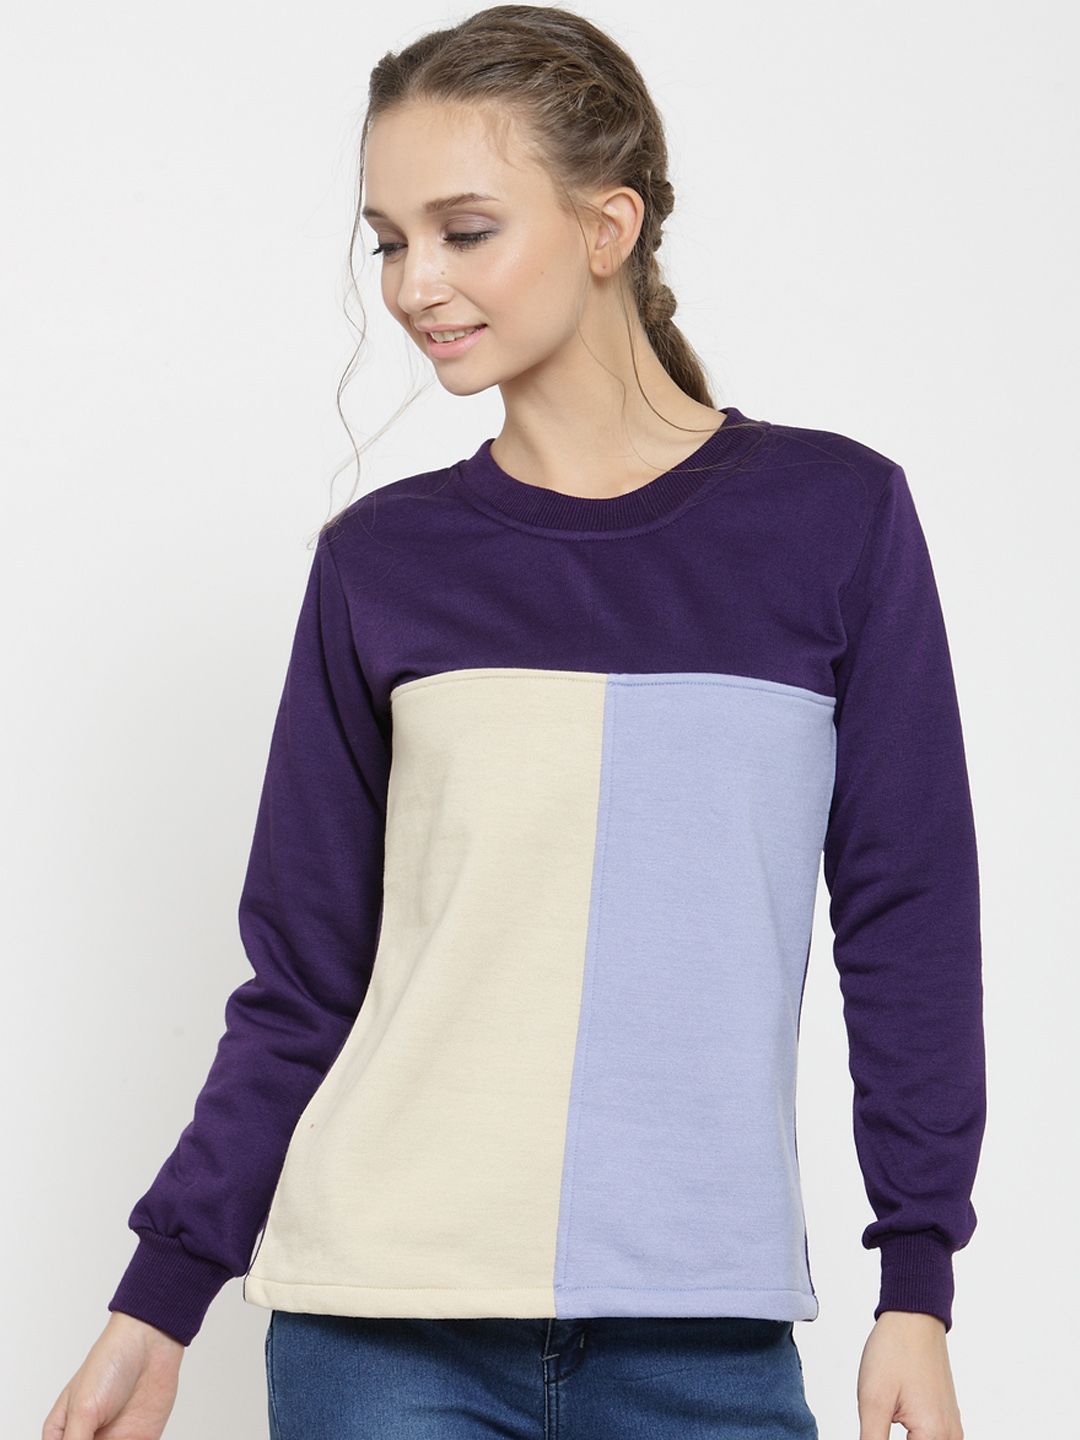 Belle Fille Women Purple & Beige Colourblocked Sweatshirt Price in India